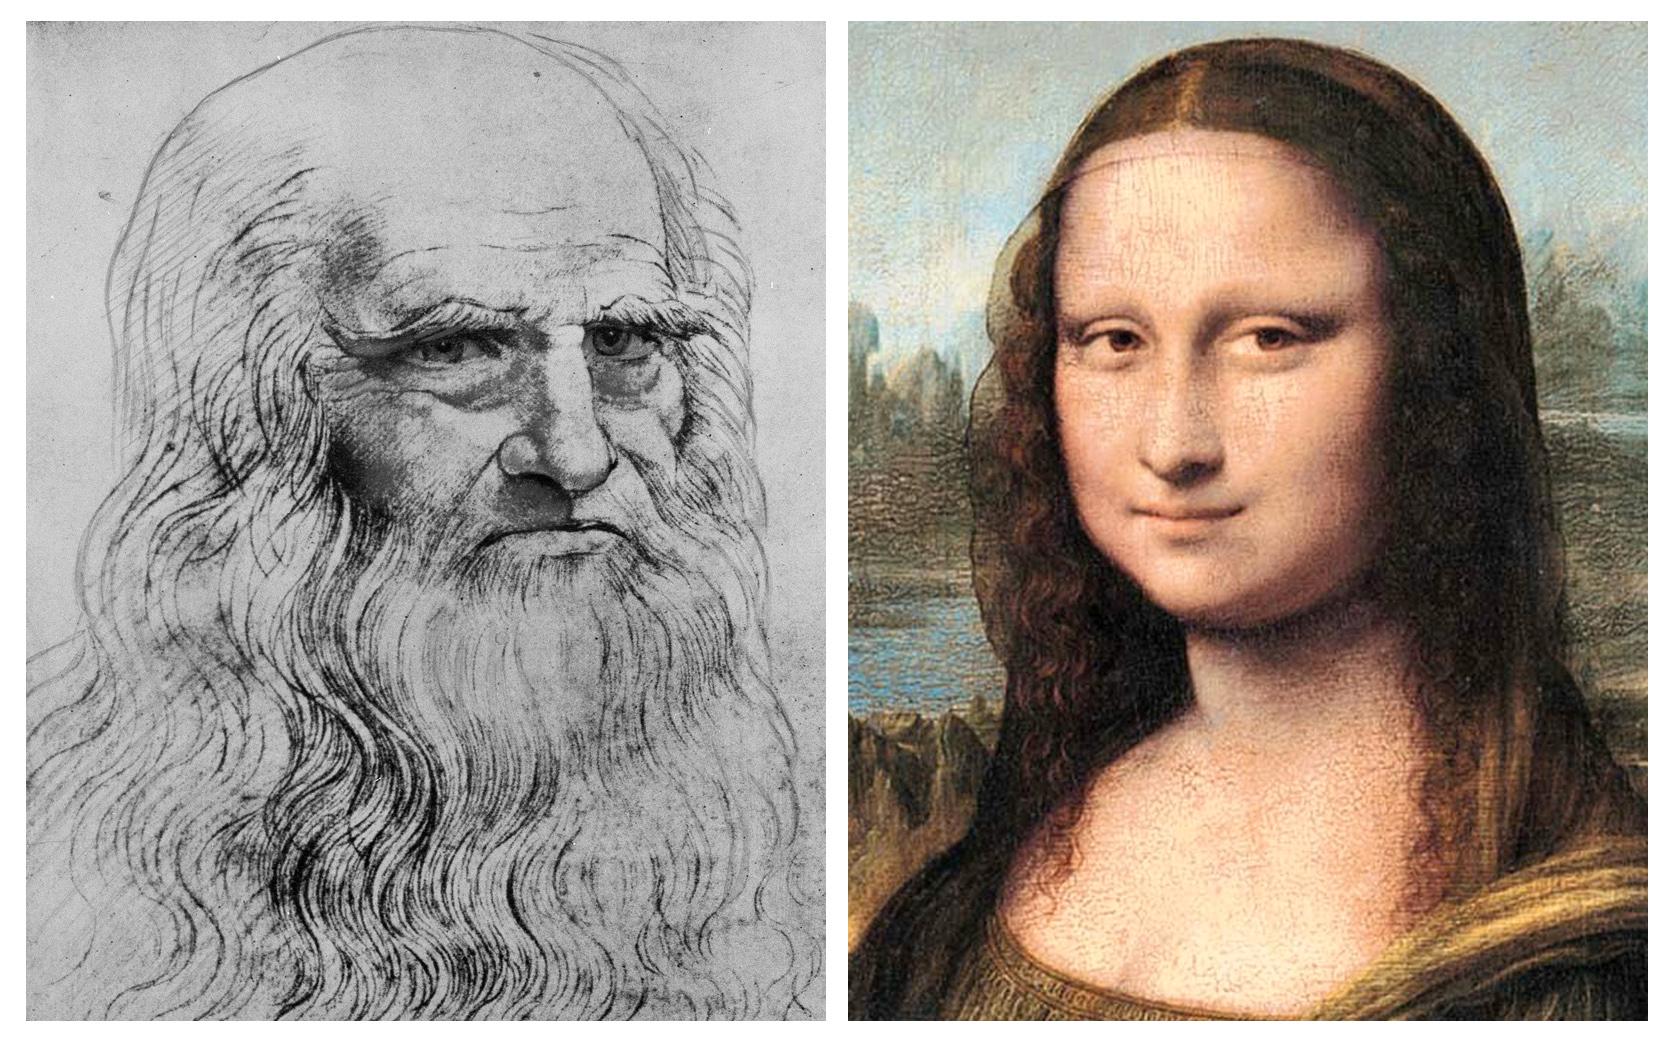 Självporträtt på Leonardo da Vinci och hans målning av Mona Lisa